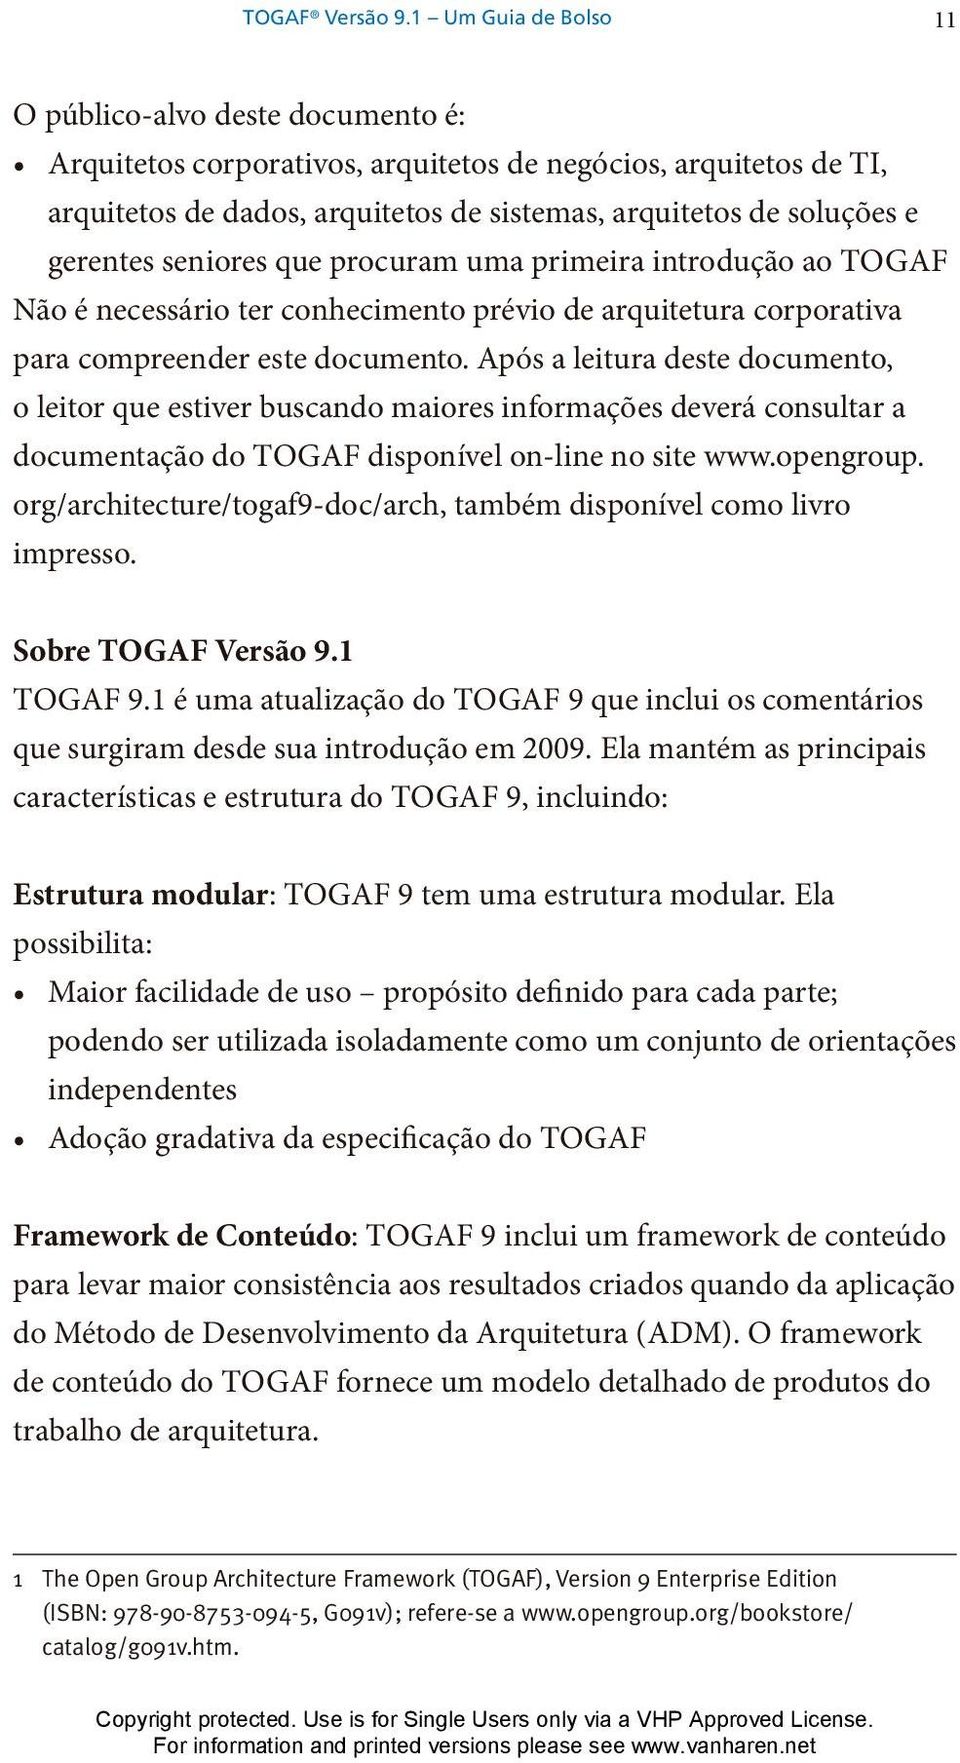 gerentes seniores que procuram uma primeira introdução ao TOGAF Não é necessário ter conhecimento prévio de arquitetura corporativa para compreender este documento.